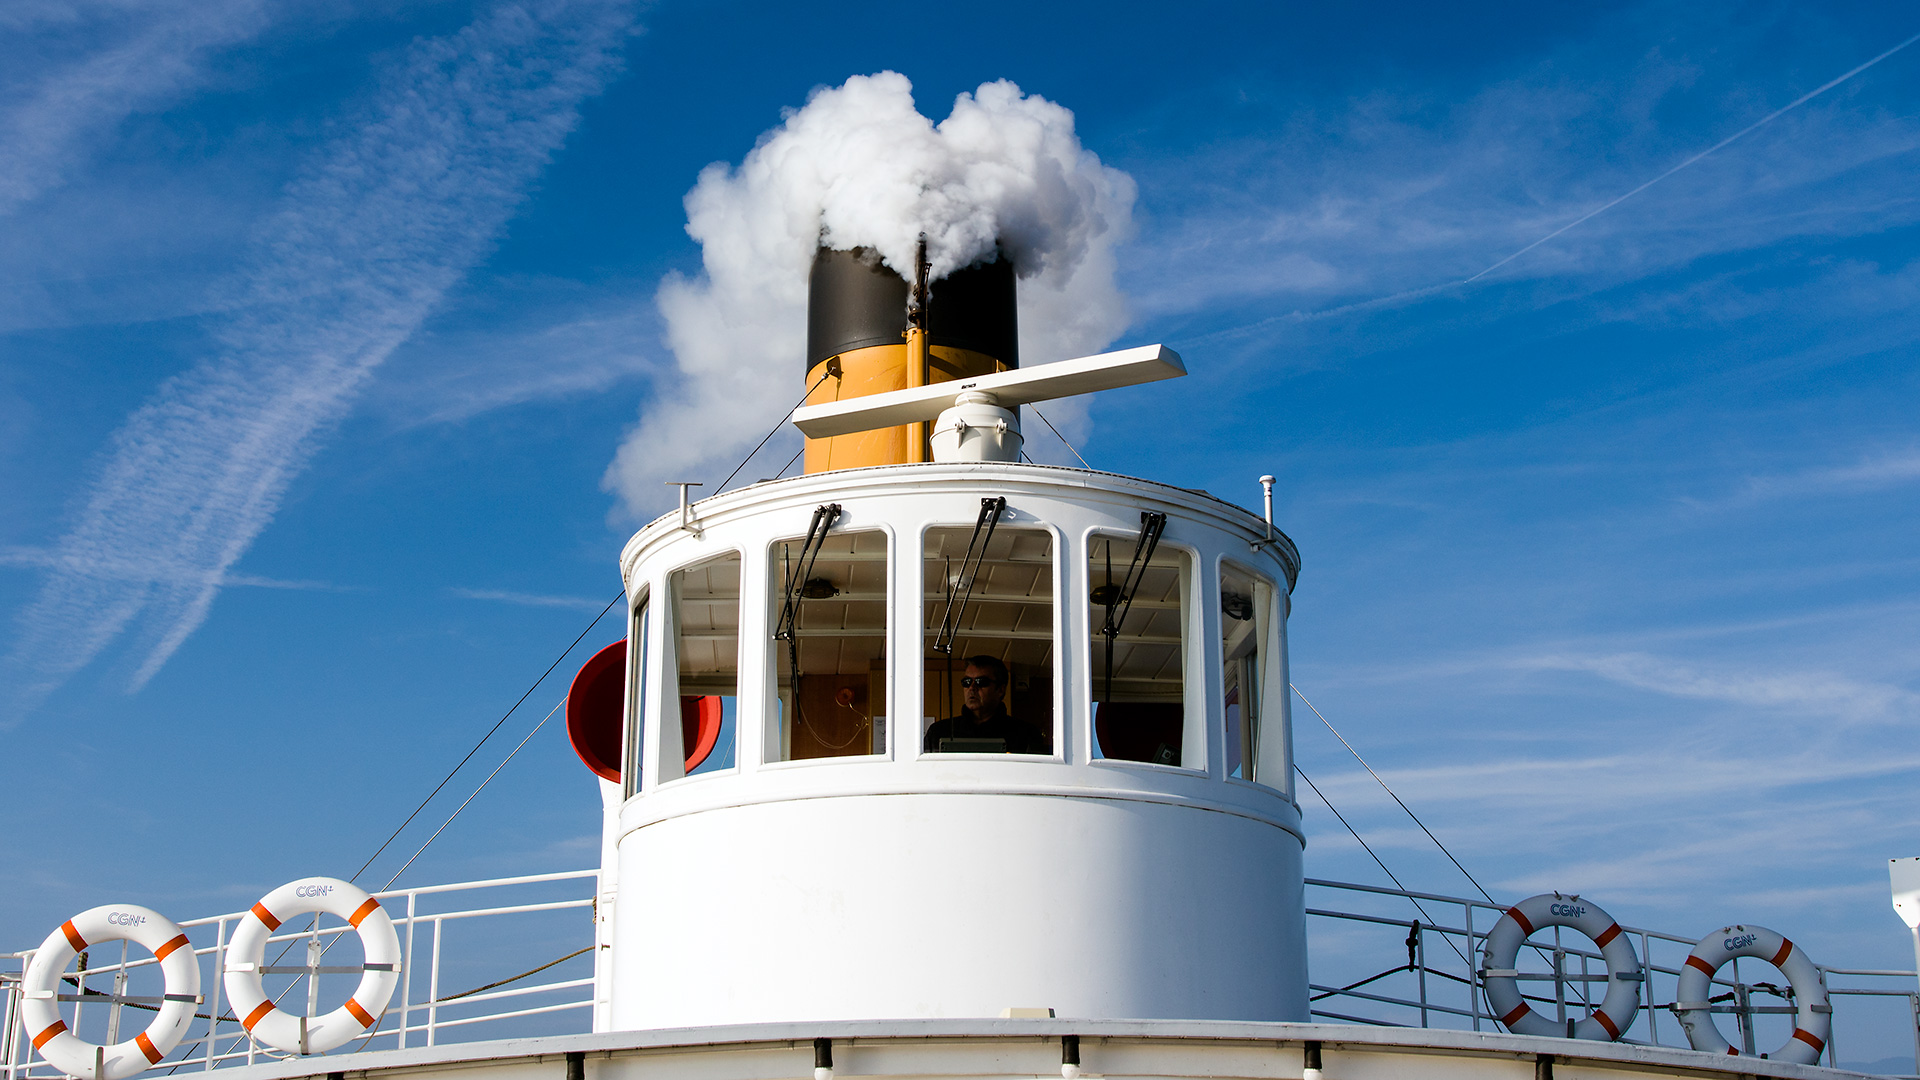 General 1920x1080 ship chimneys men smoke clouds tower